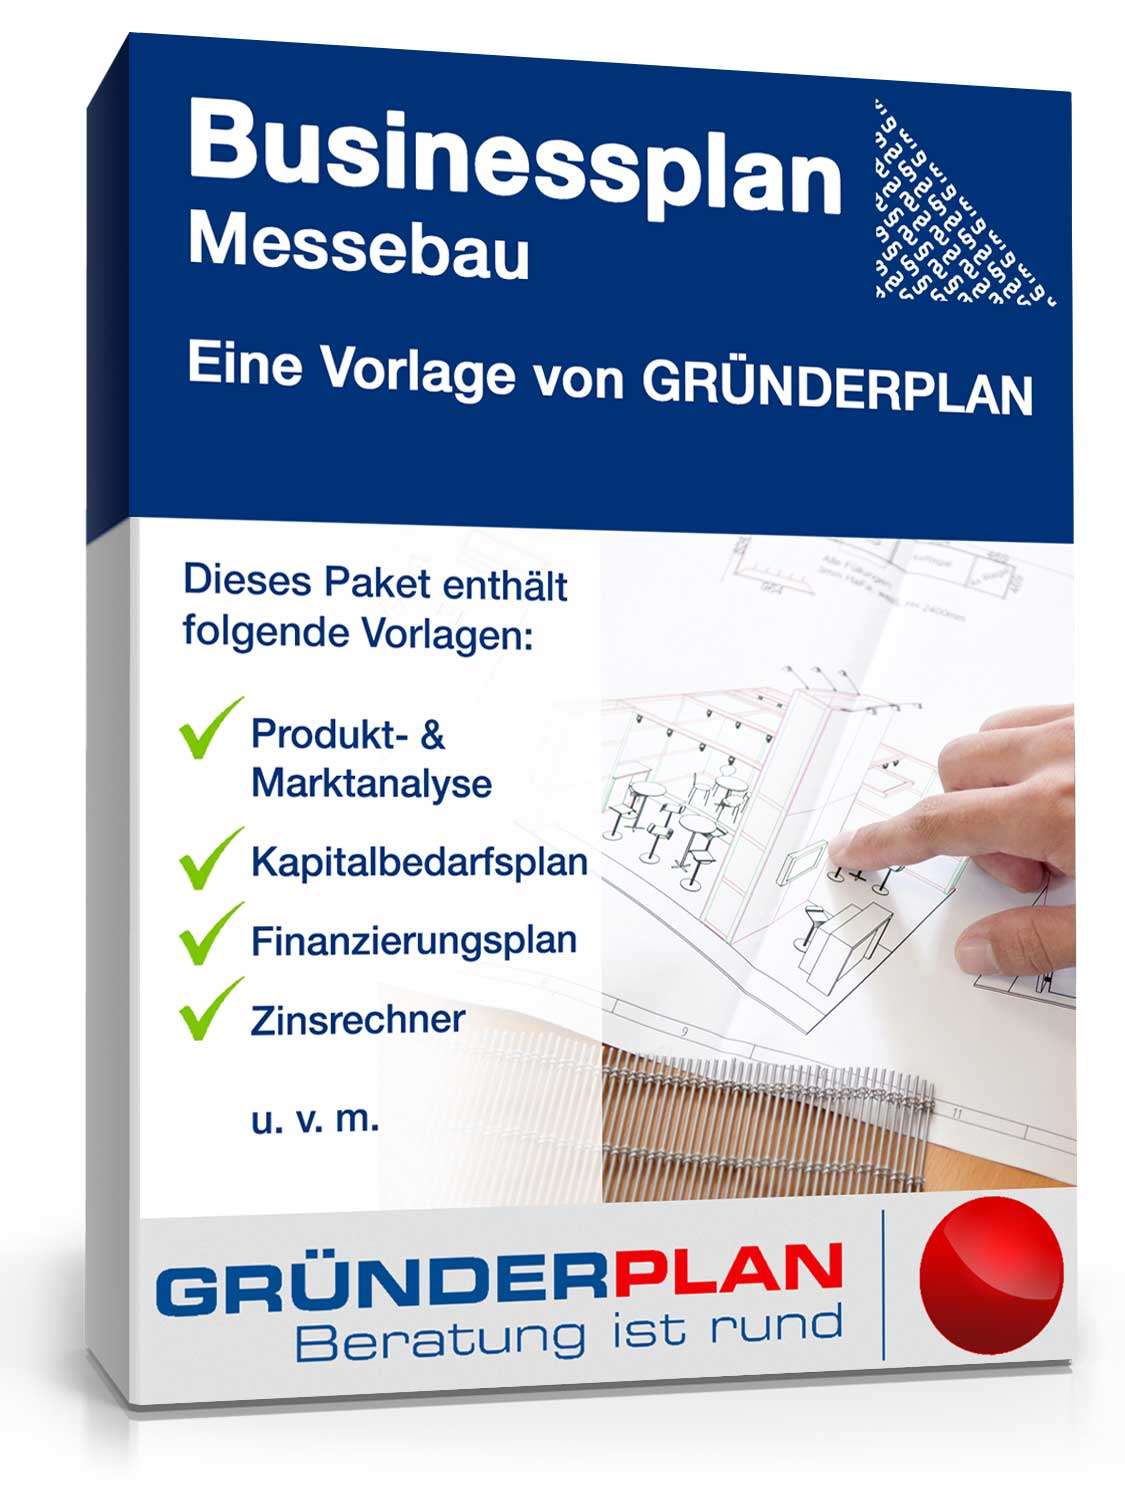 Hauptbild des Produkts: Businessplan Messebau von Gründerplan